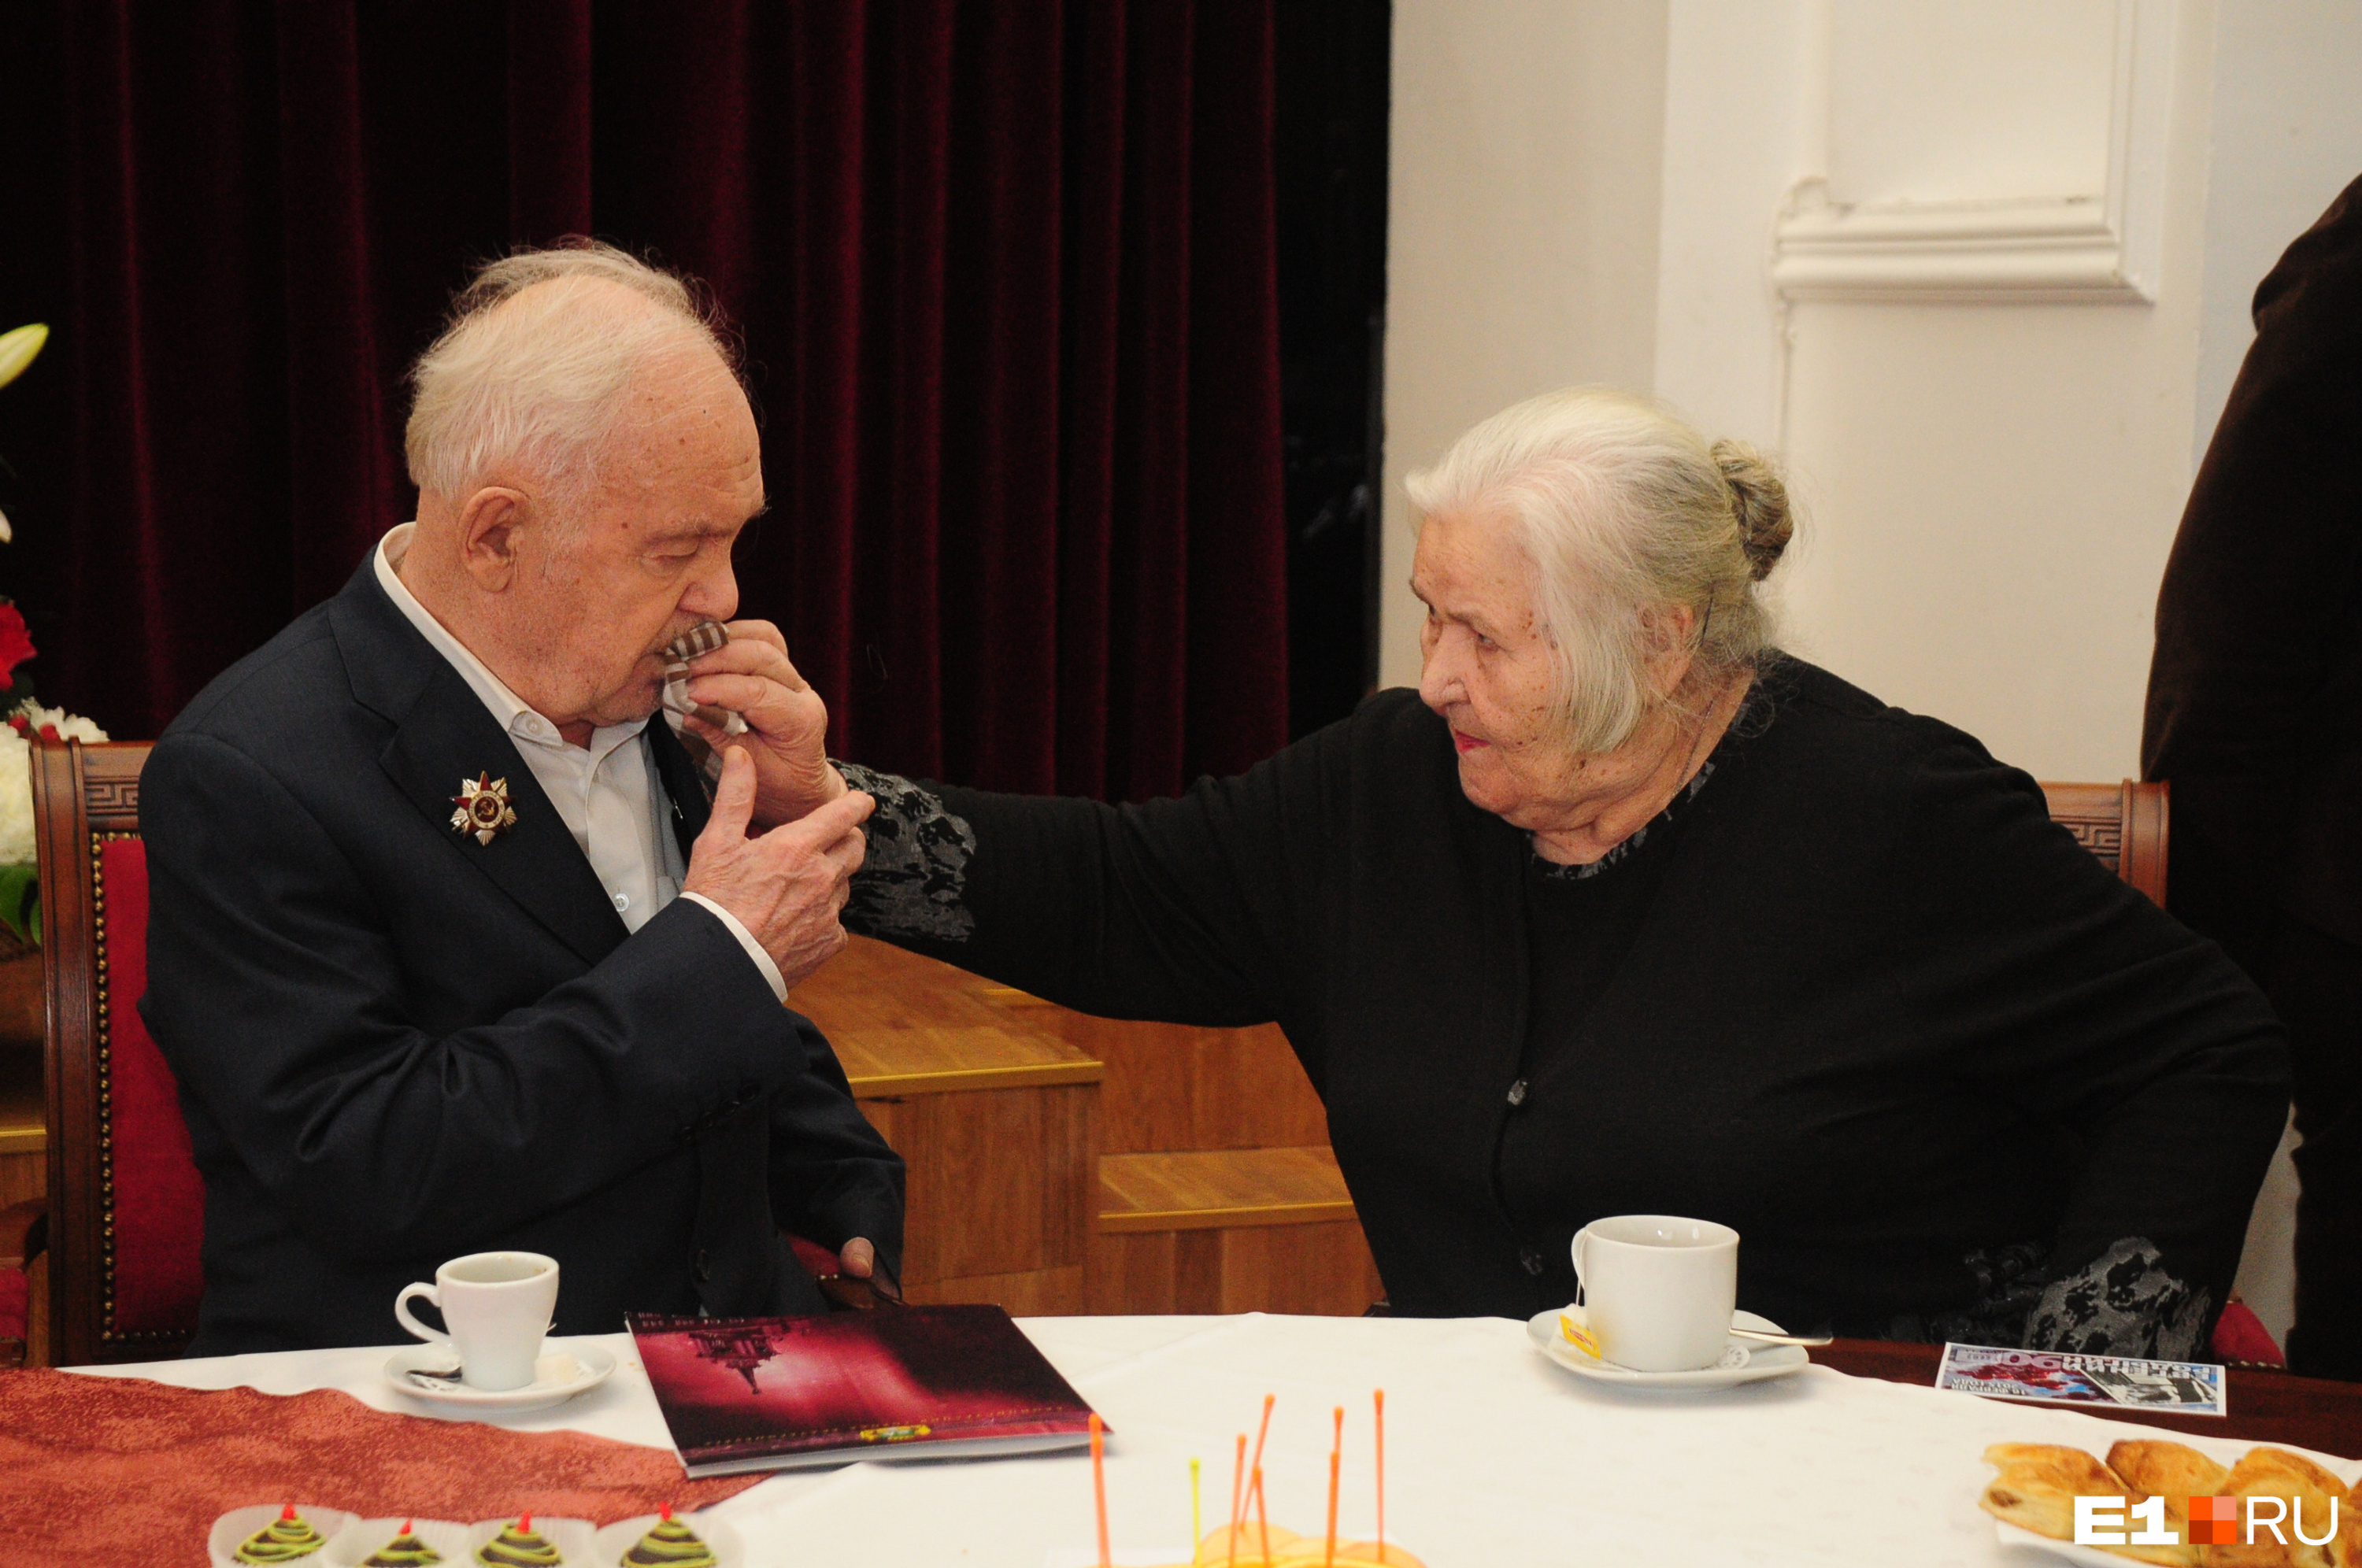 Евгений Павлович с женой Галиной Семеновной. Этот трогательный снимок сделан пять лет назад, на праздновании 90-летия композитора